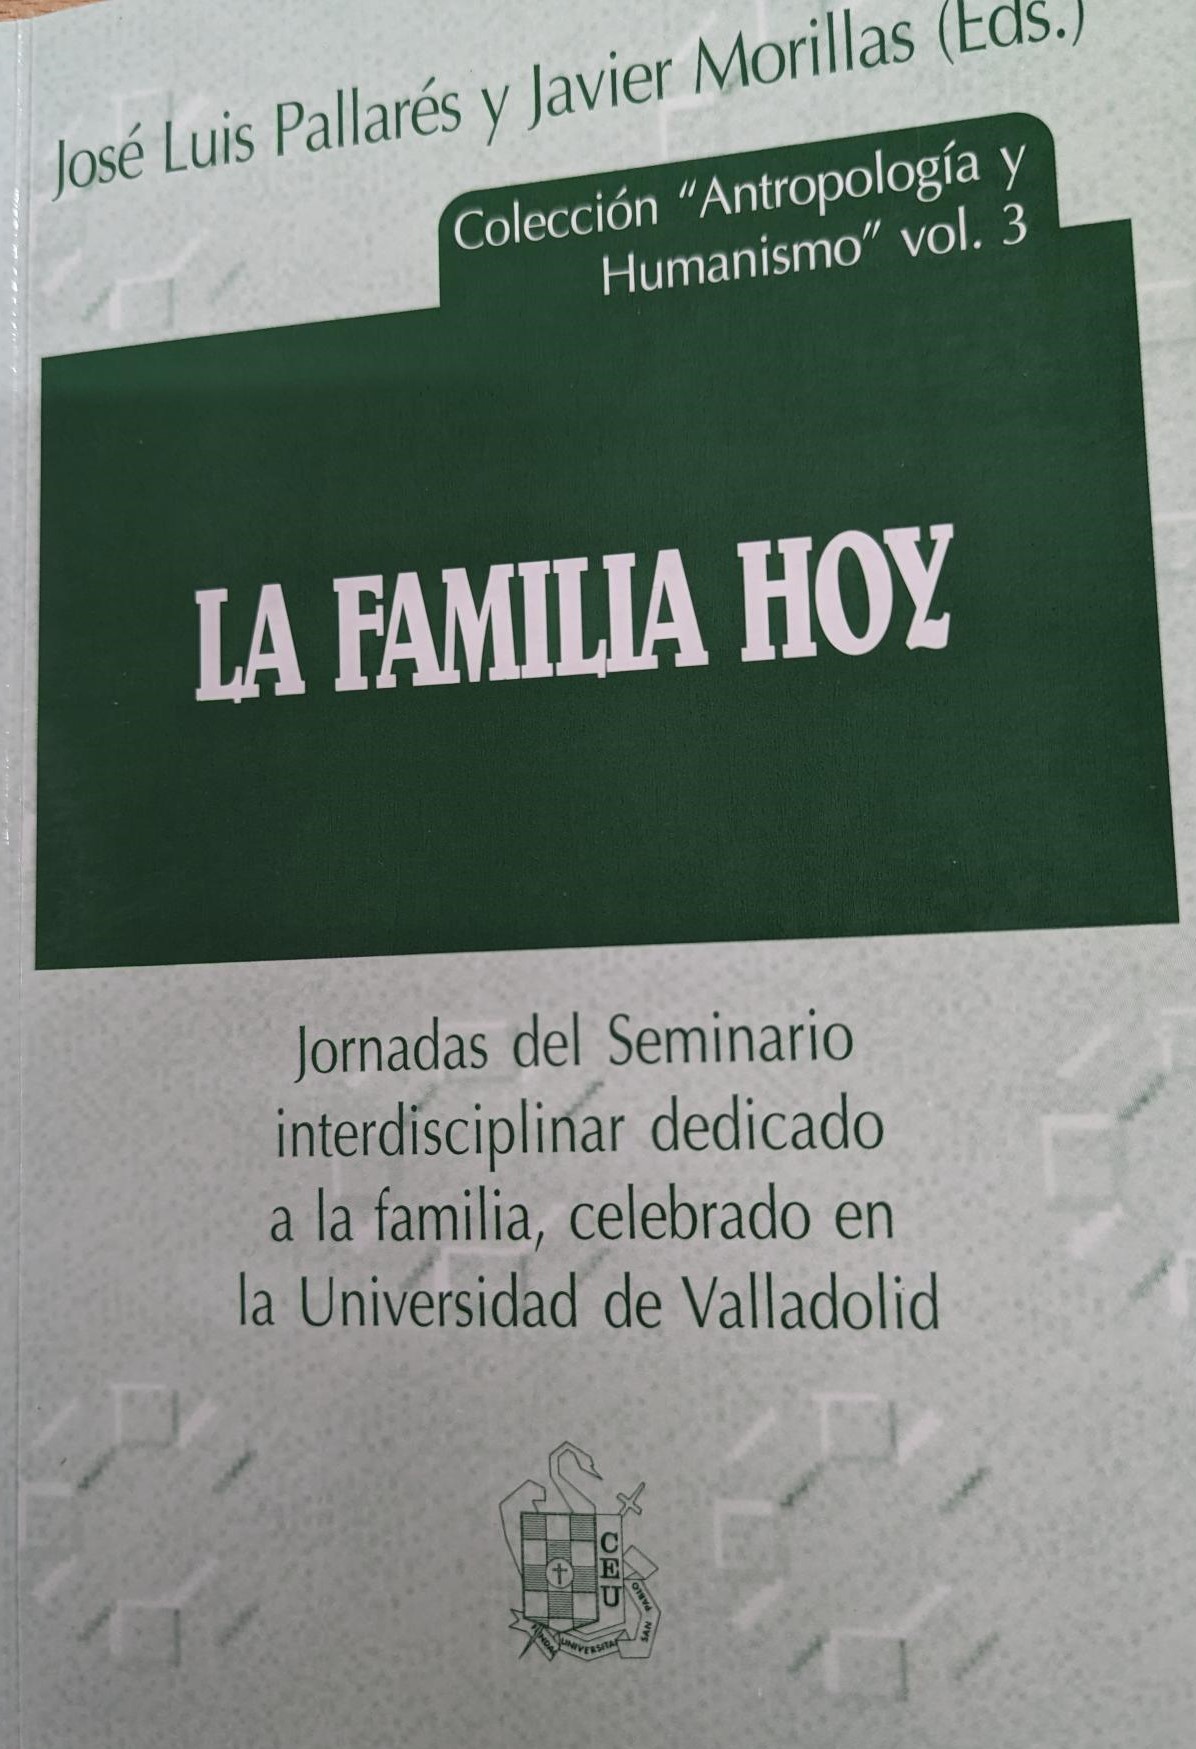 Imagen de portada del libro La familia hoy